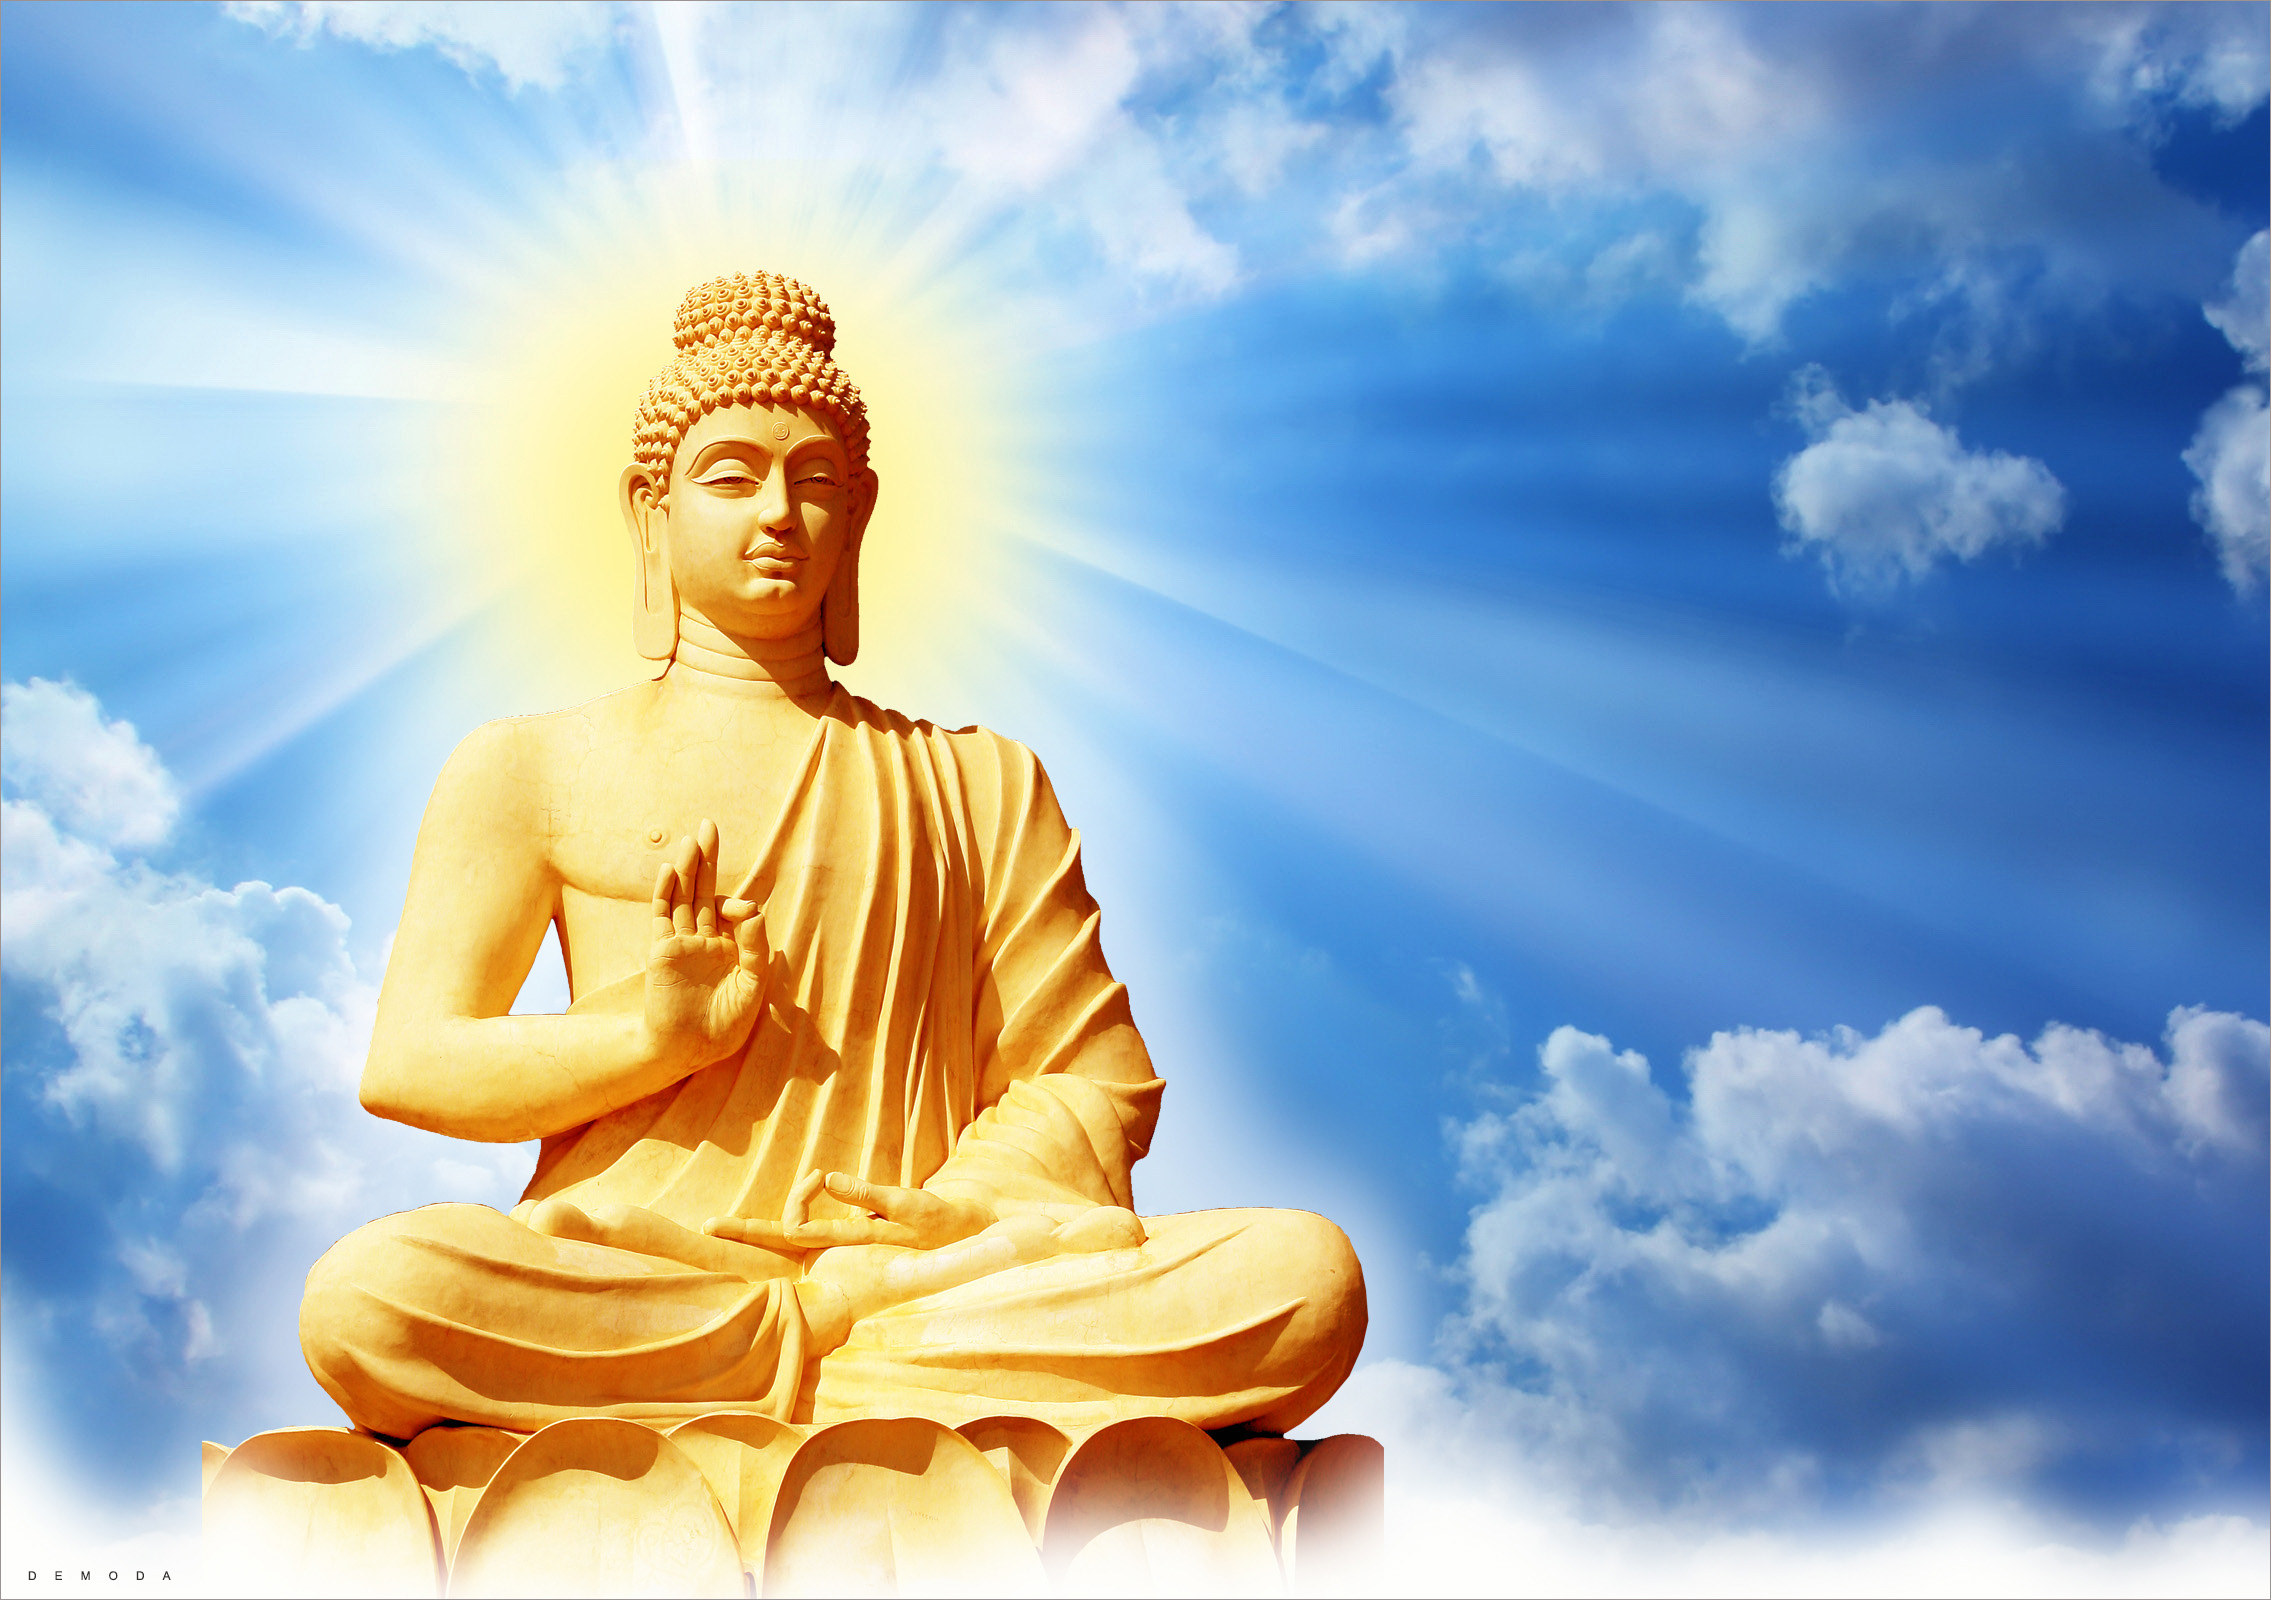 99 Hình Phật Đẹp Và Ấn Tượng Đang Được Ưa Chuộng Nhất